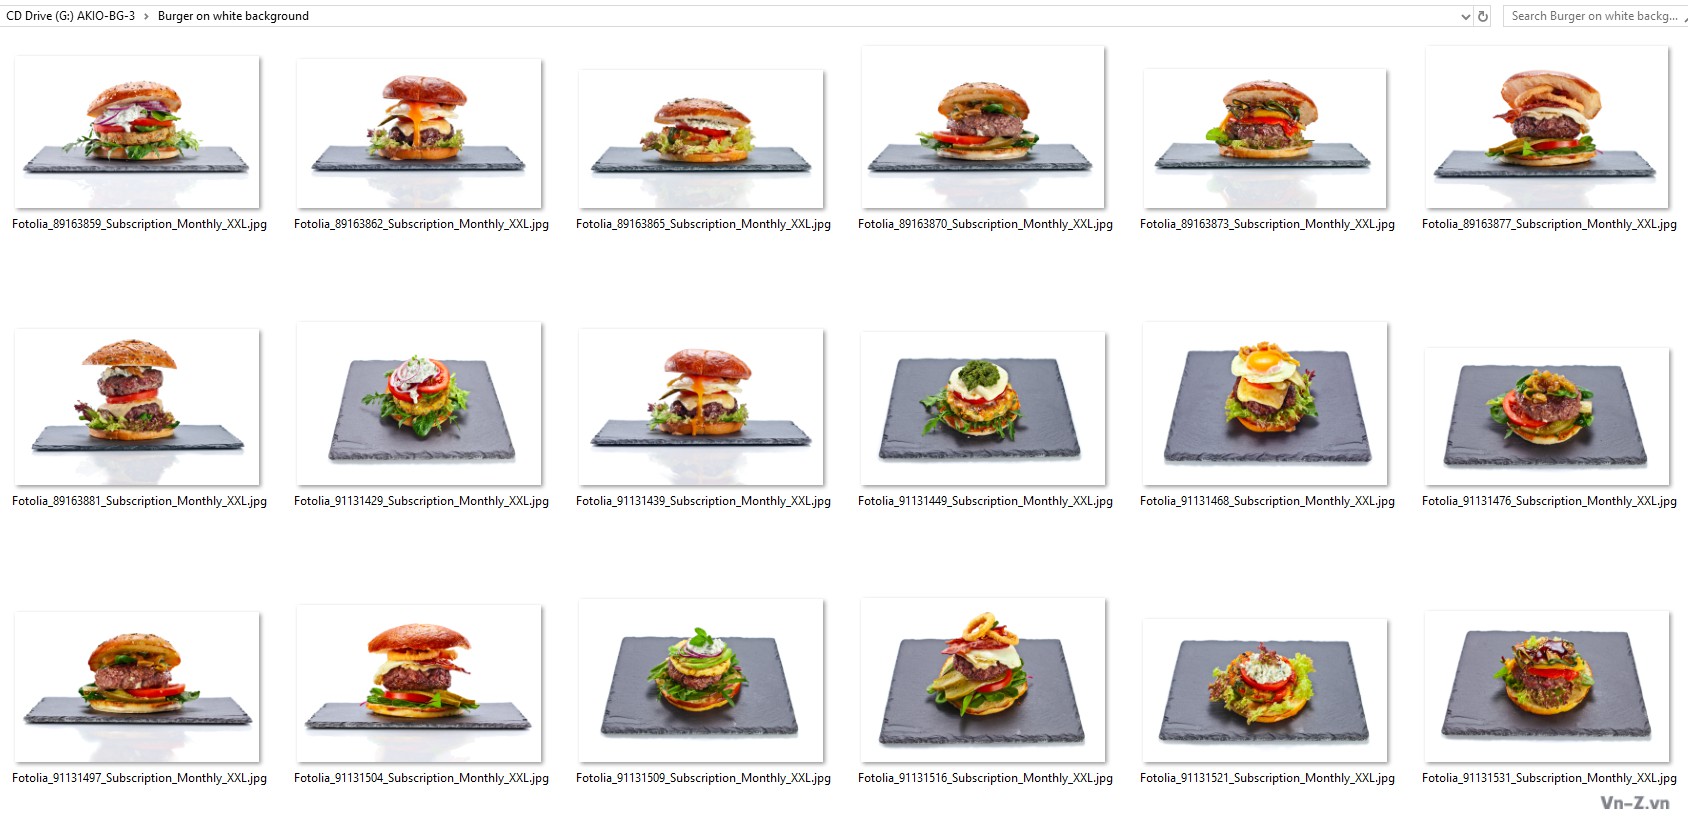 043-Burger-on-white-background.jpg